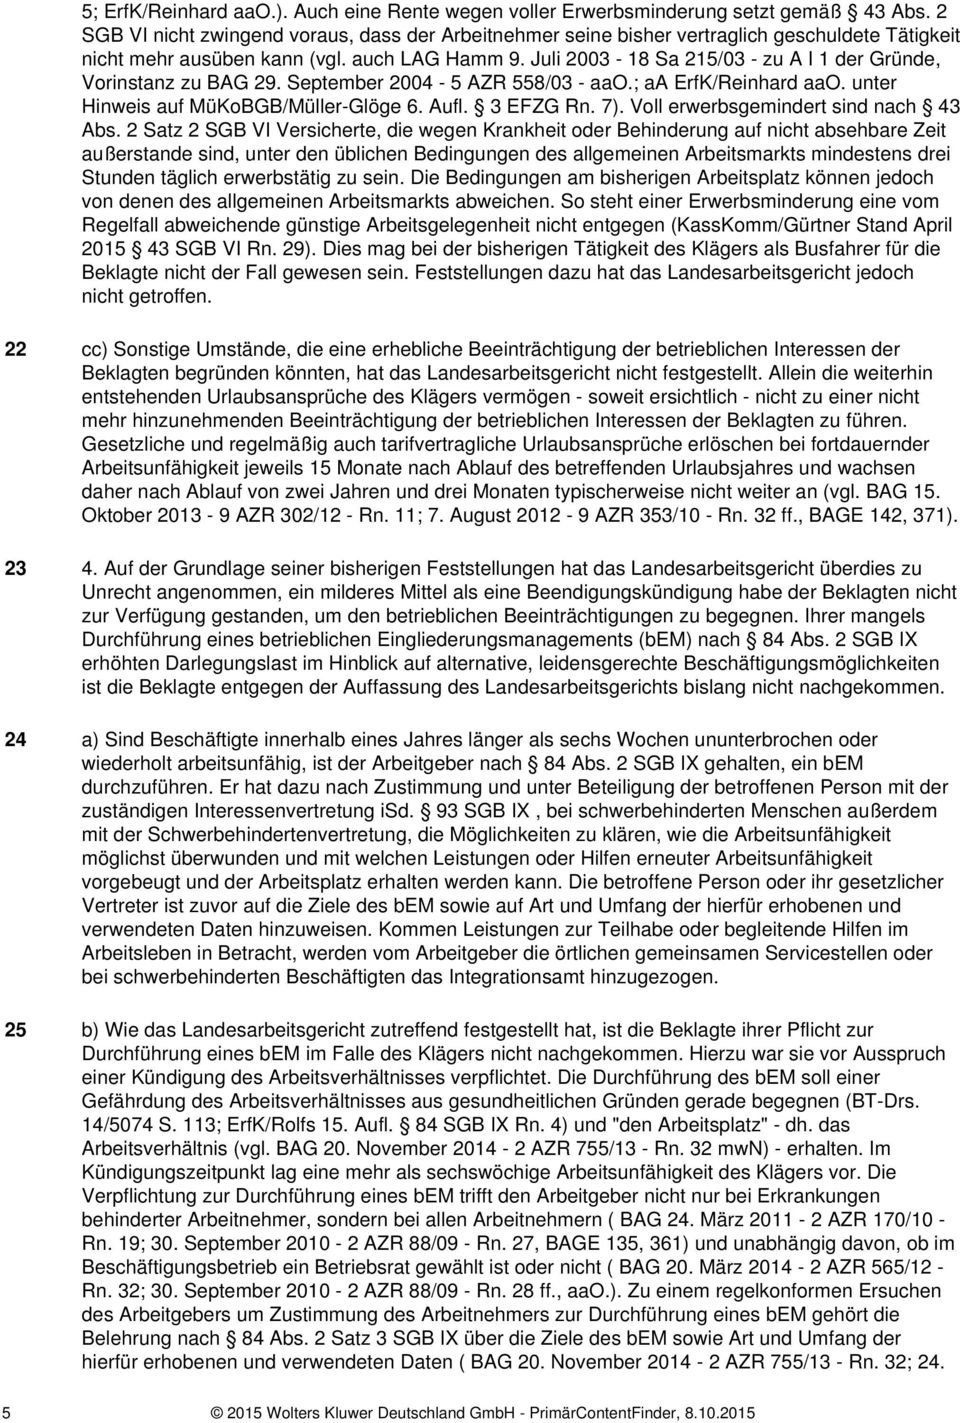 Juli 2003-18 Sa 215/03 - zu A I 1 der Gründe, Vorinstanz zu BAG 29. September 2004-5 AZR 558/03 - aao.; aa ErfK/Reinhard aao. unter Hinweis auf MüKoBGB/Müller-Glöge 6. Aufl. 3 EFZG Rn. 7).